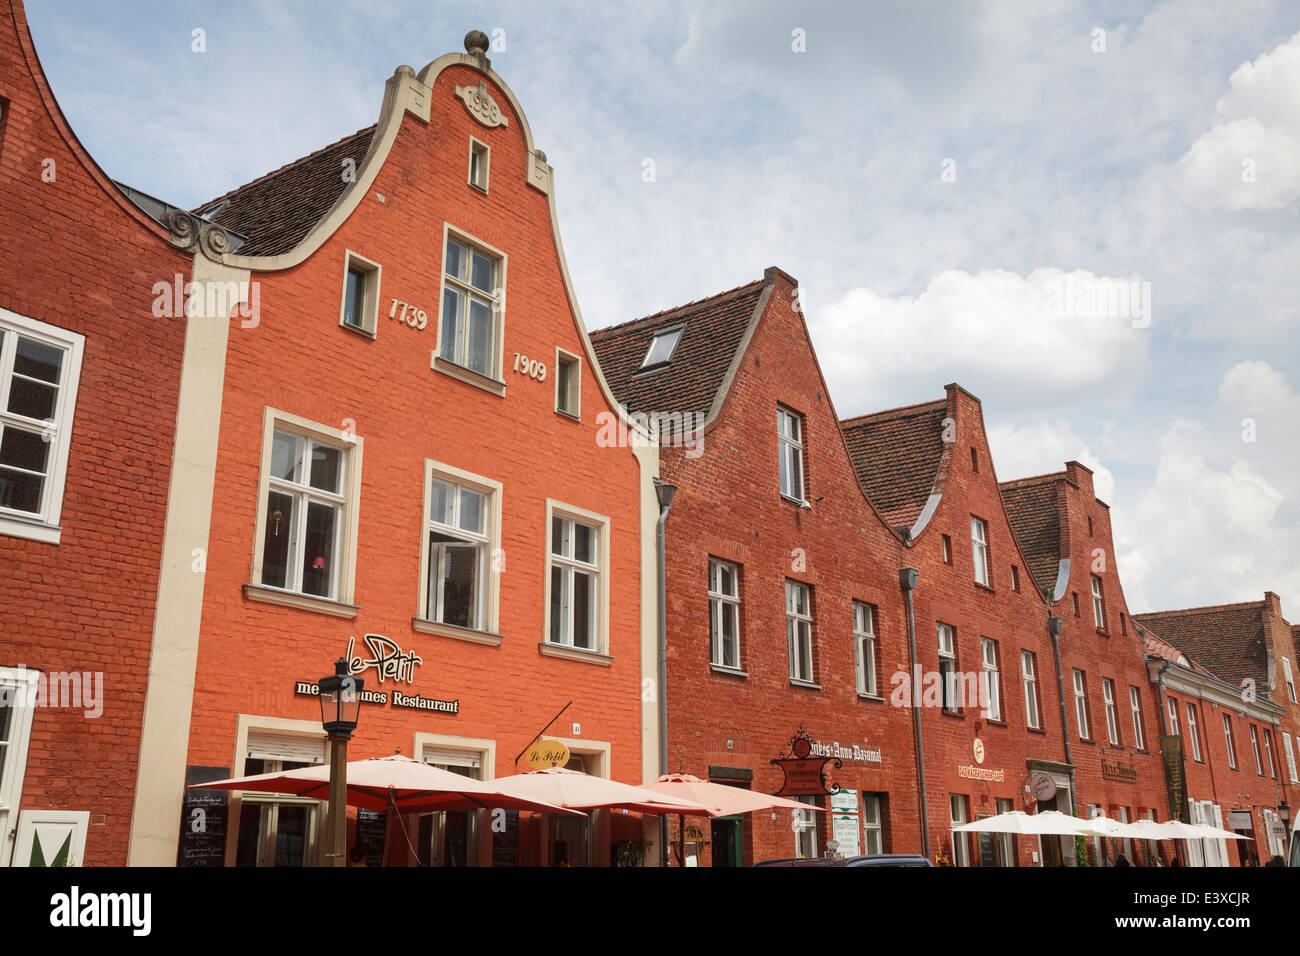 typische Architektur in das Holländische Viertel, Potsdam, Brandenburg, Deutschland Stockfoto